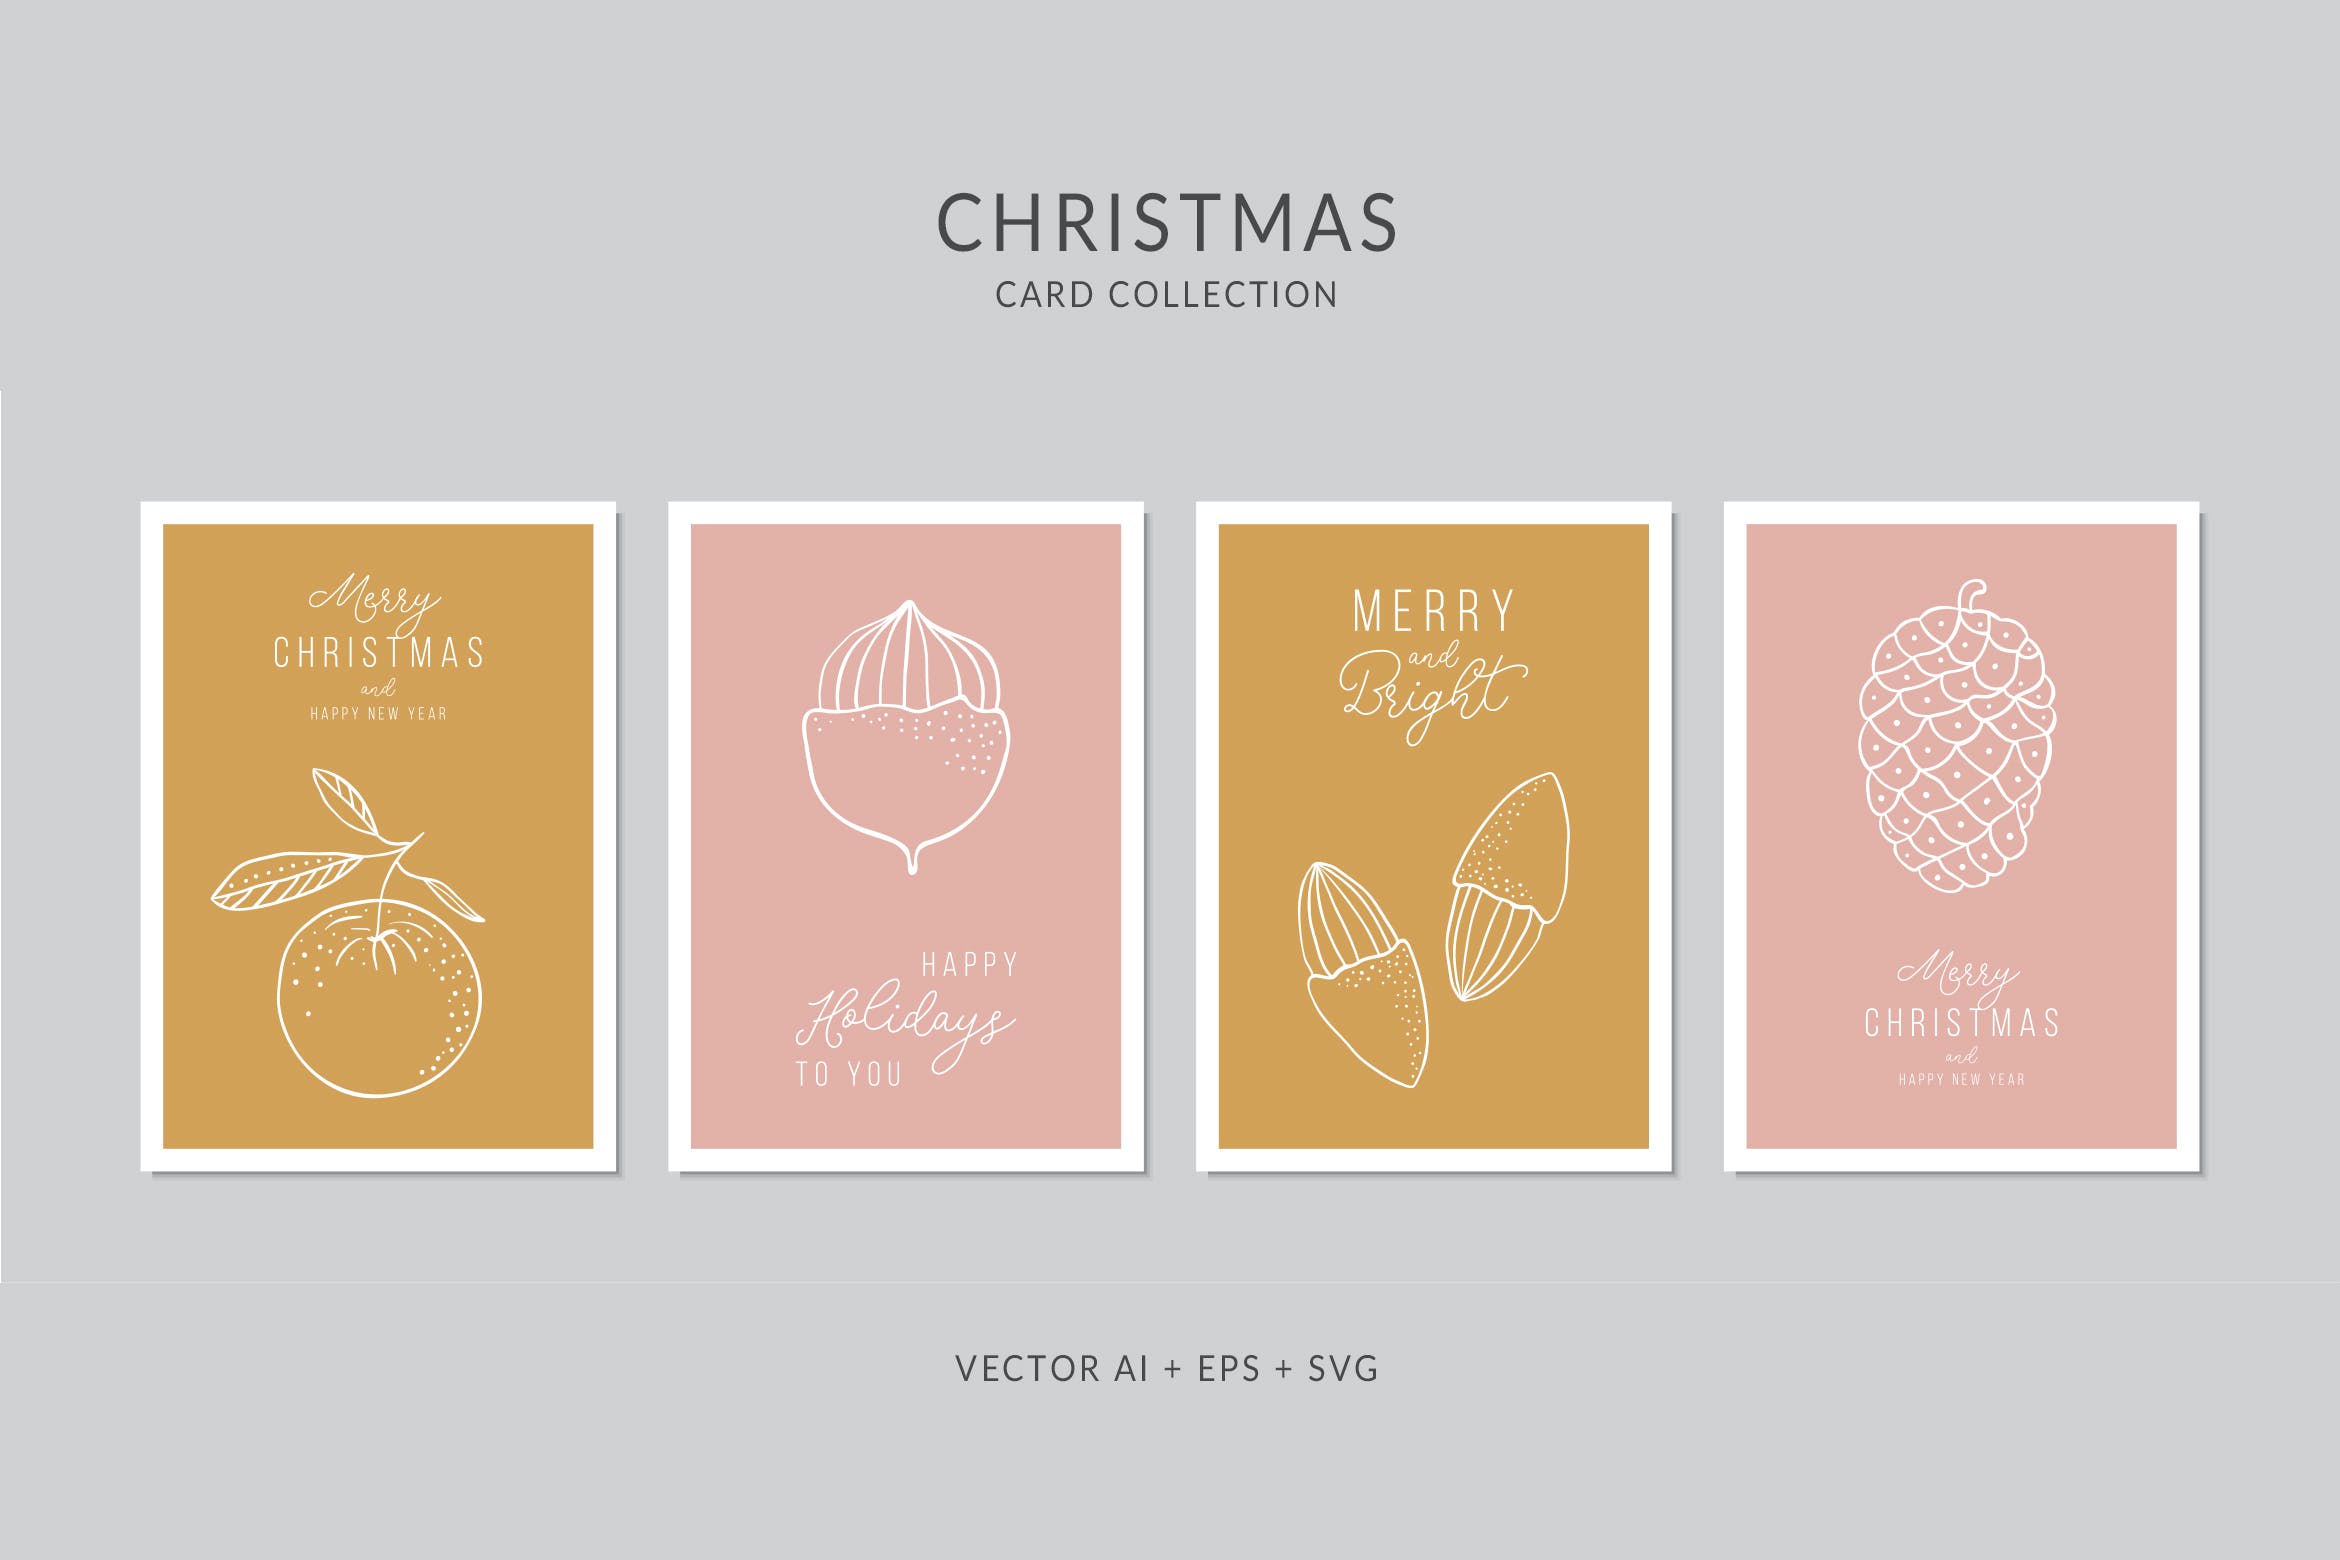 圣诞果实简笔画手绘图案圣诞节贺卡模板 Christmas Greeting Card Vector Set插图